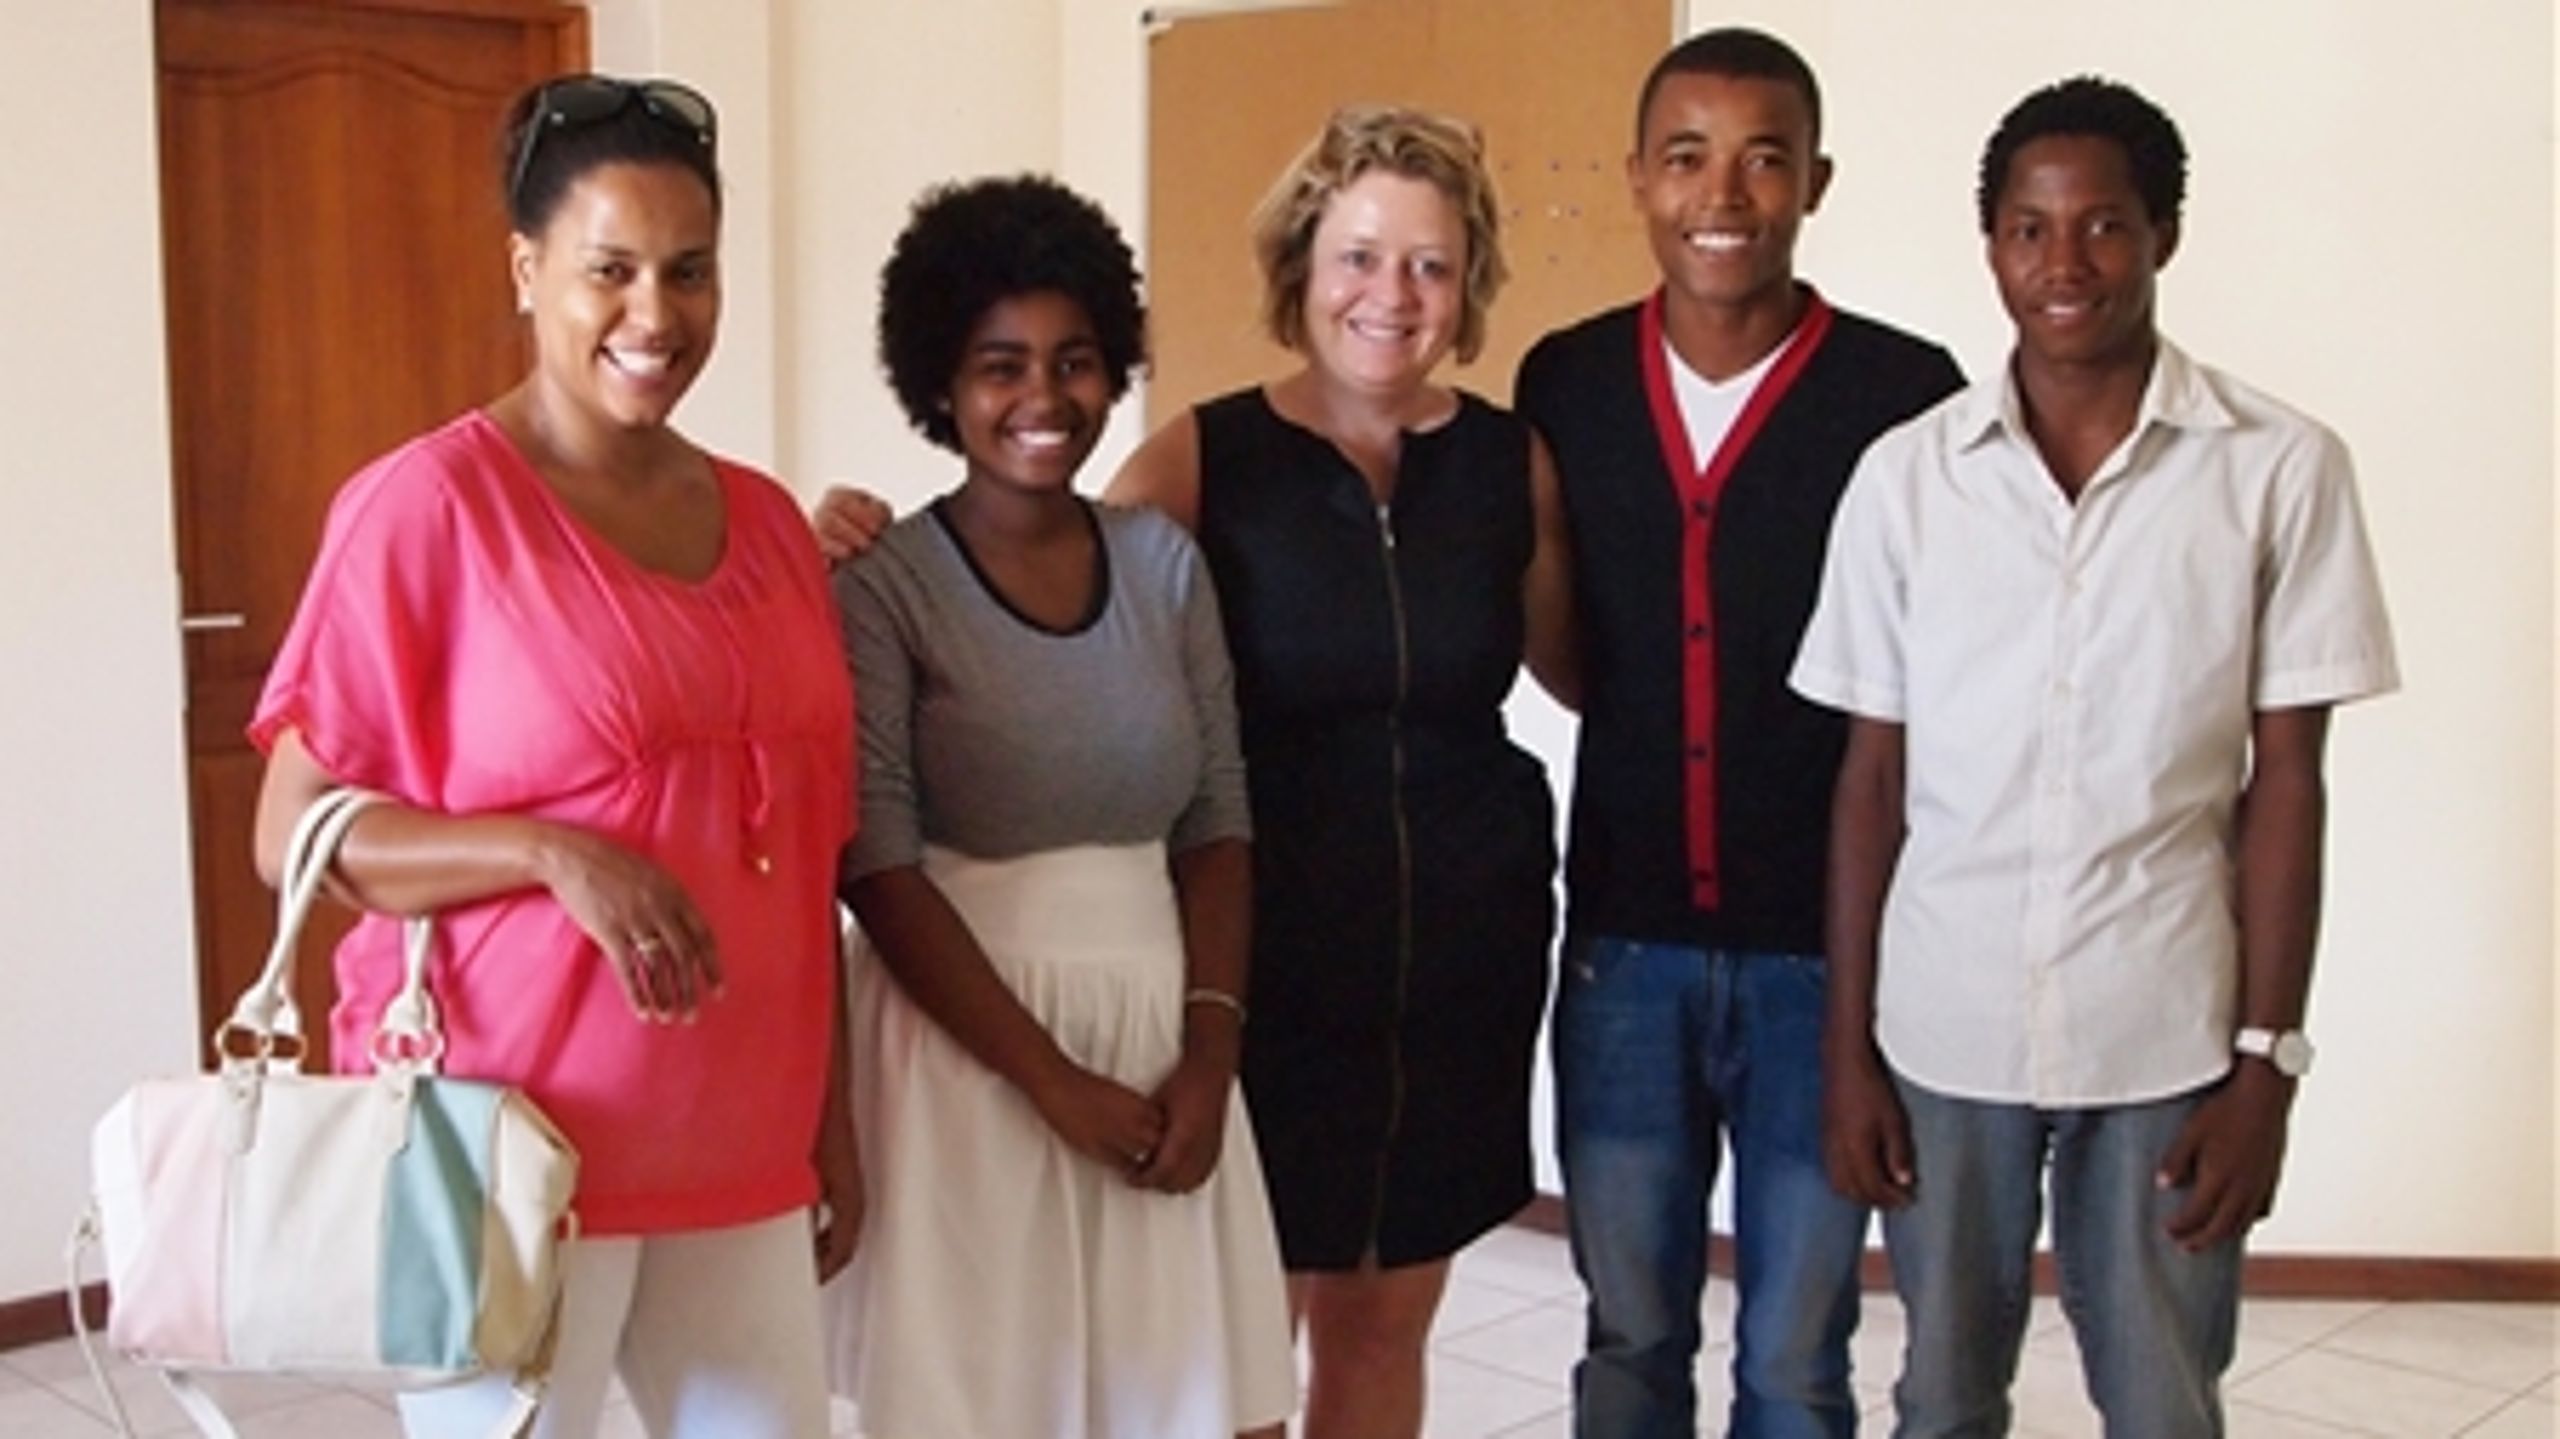 "Under mit besøg i Kap Verde oplevede jeg mange positive takter. F.eks. er talentmassen af veluddannede unge i dag større end nogensinde," skriver Stine Bosse, formand i BØRNEfonden og ambassadør for FN's 2015-mål. 